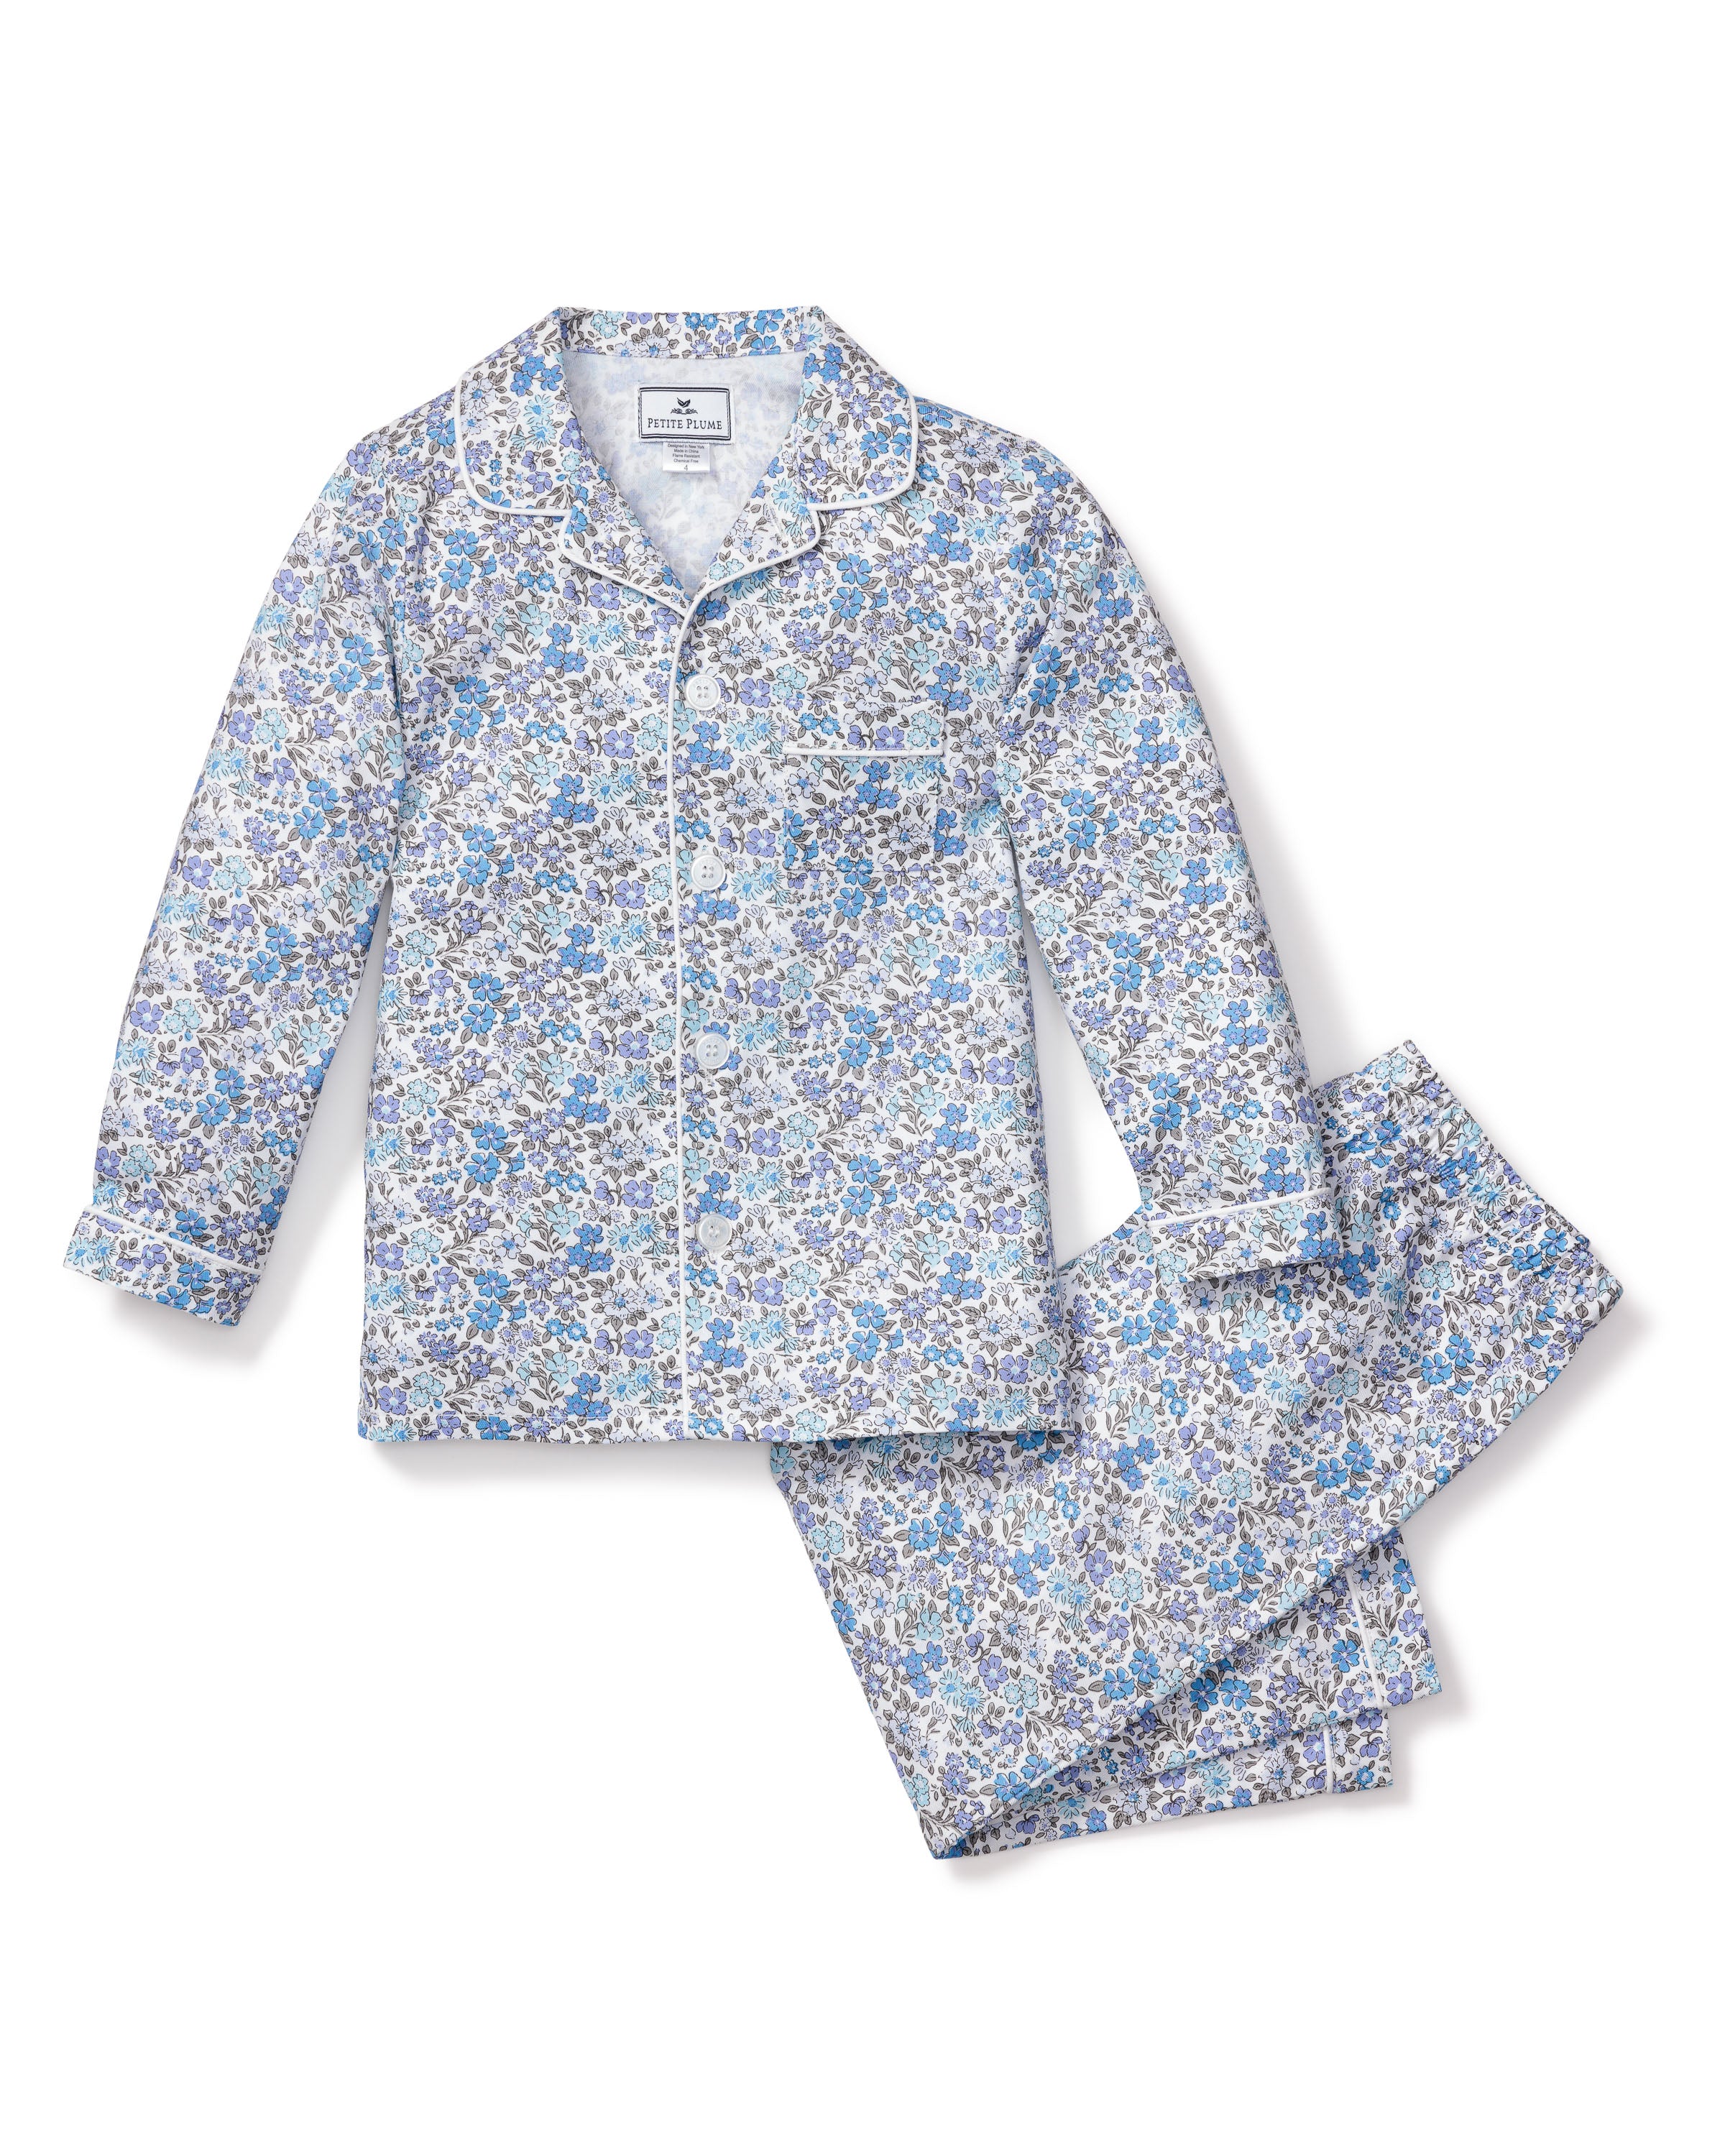 Kid's Twill Pajama Set in Fleur D'Azur